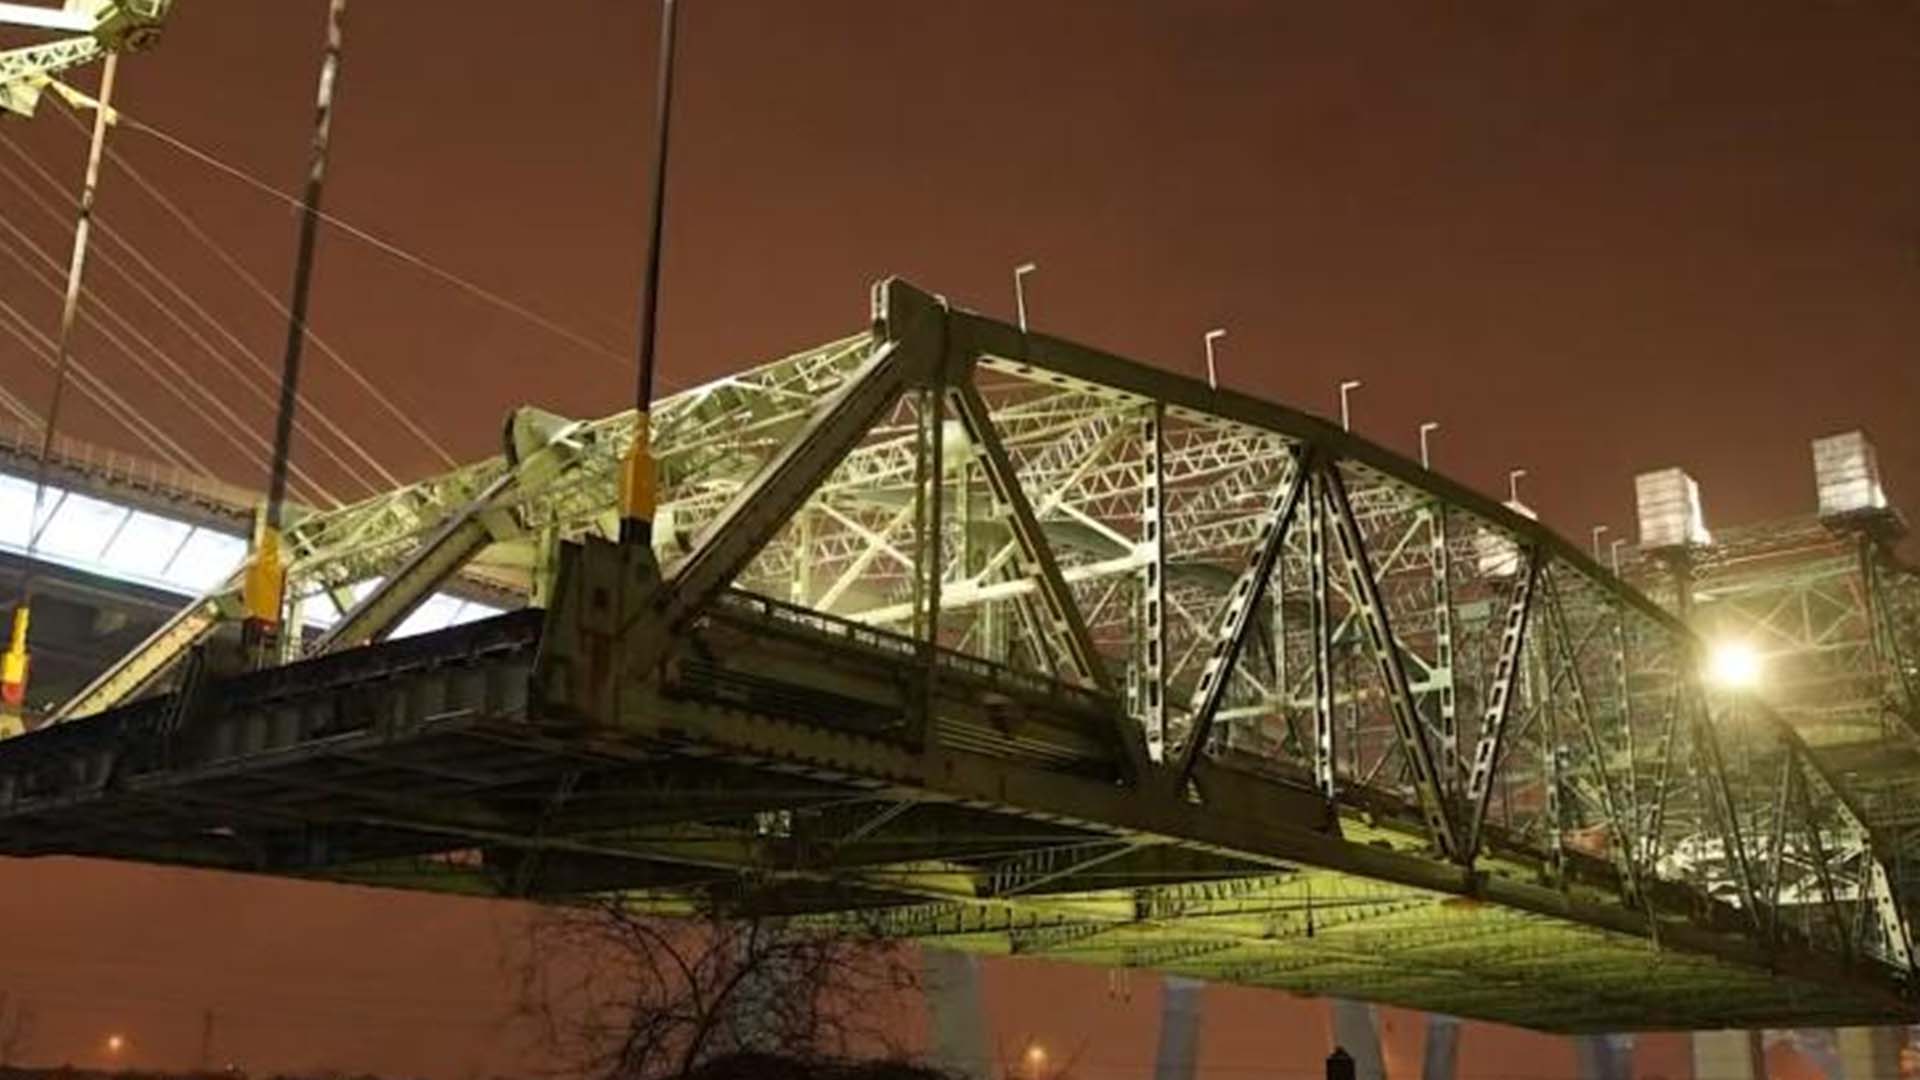 Descente de la travée principale - Vieux pont Champlain